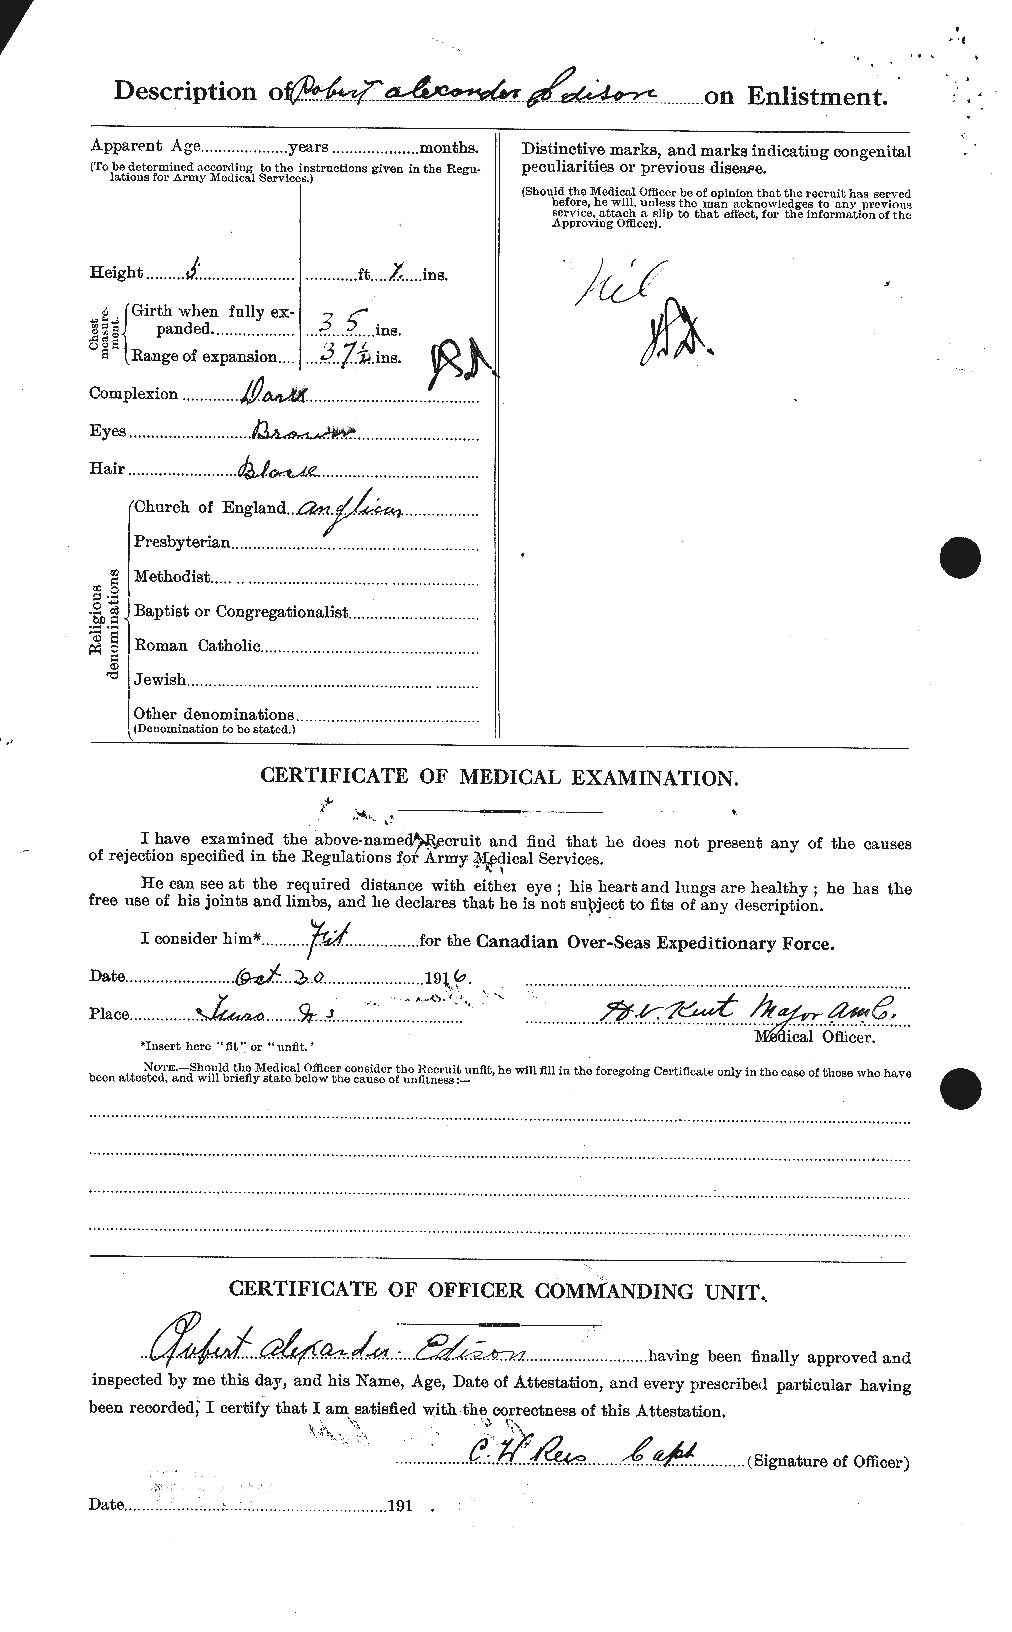 Dossiers du Personnel de la Première Guerre mondiale - CEC 309285b